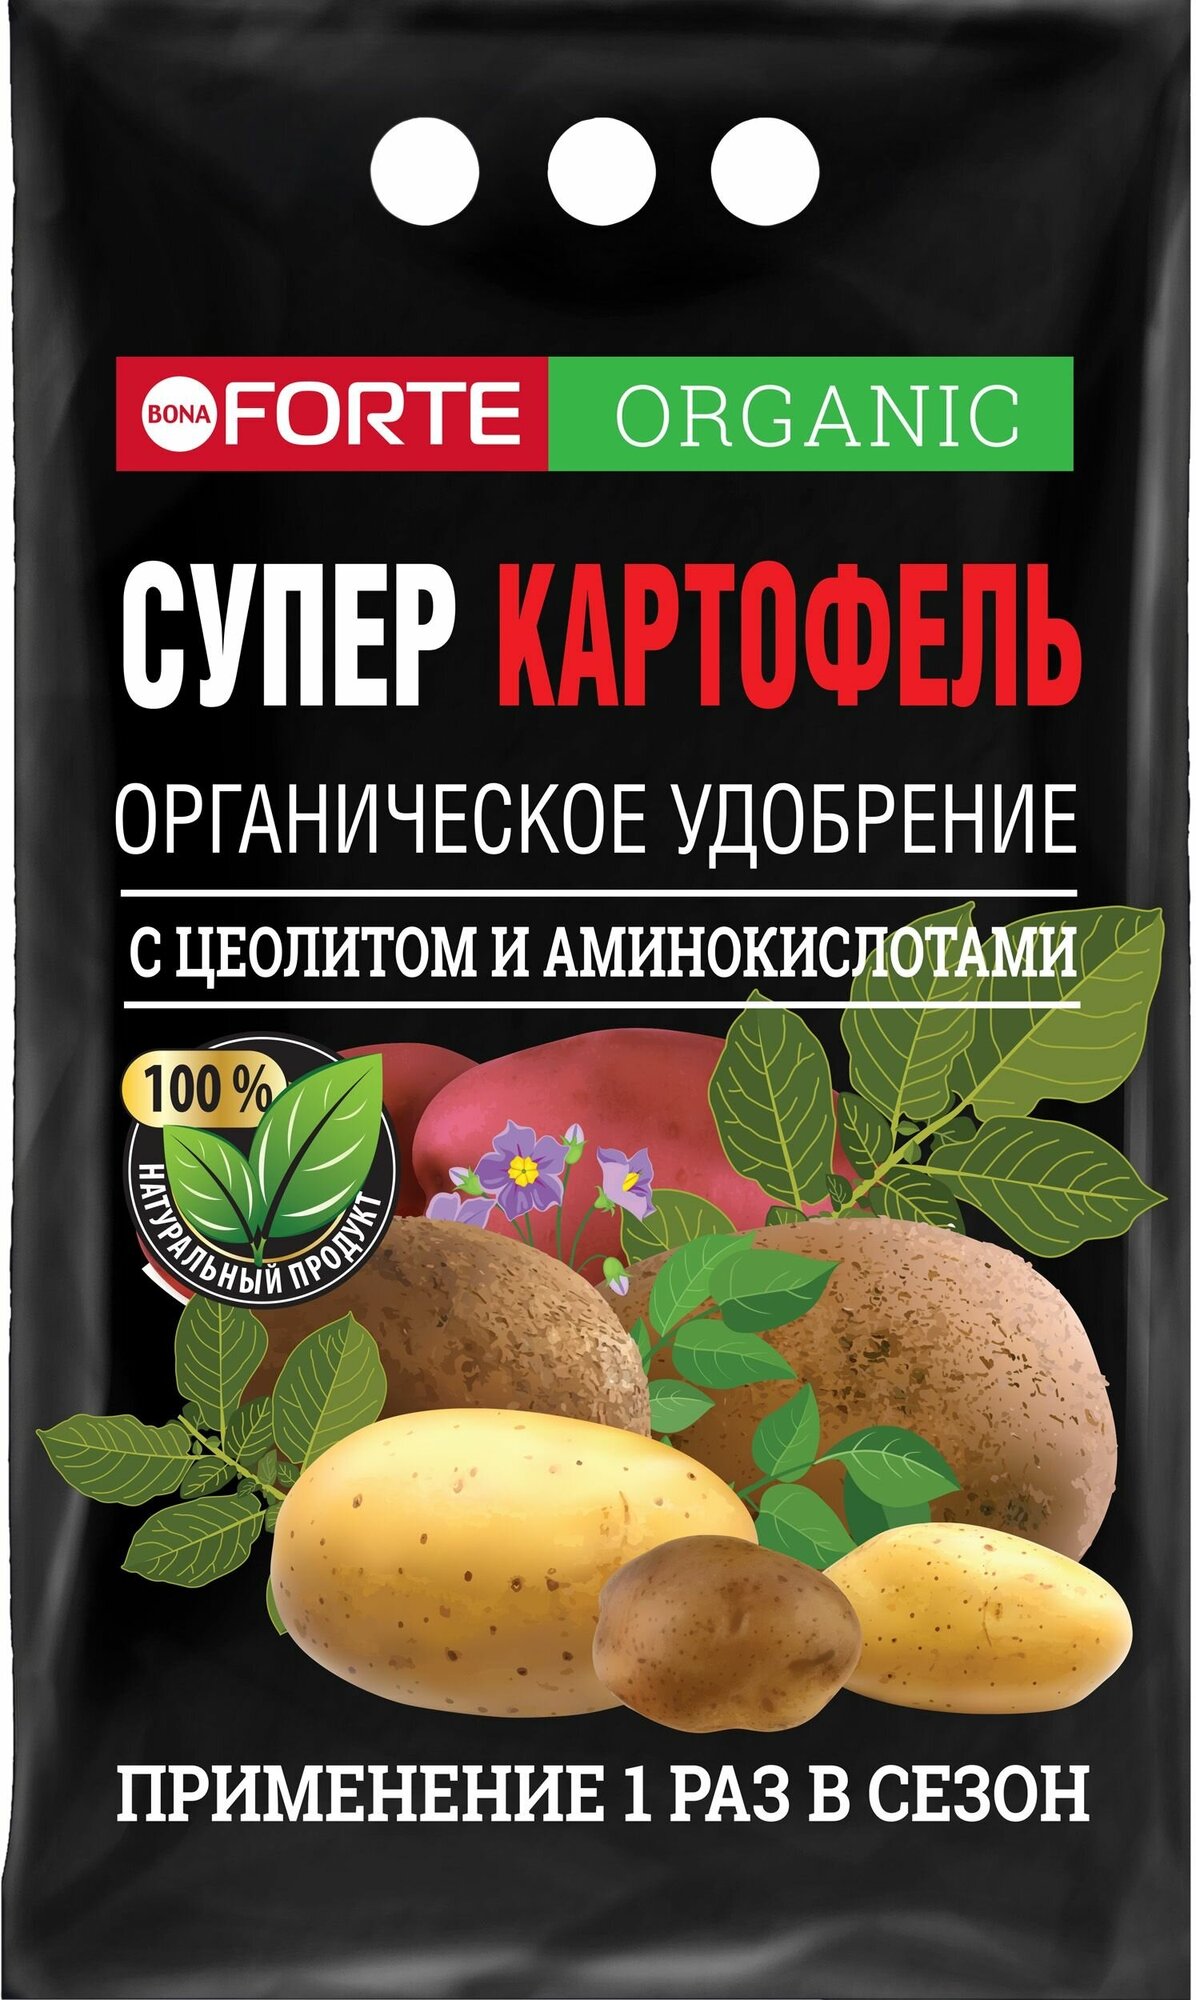 Удобрение органическое Bona Forte с цеолитом супер Картофель 2 кг